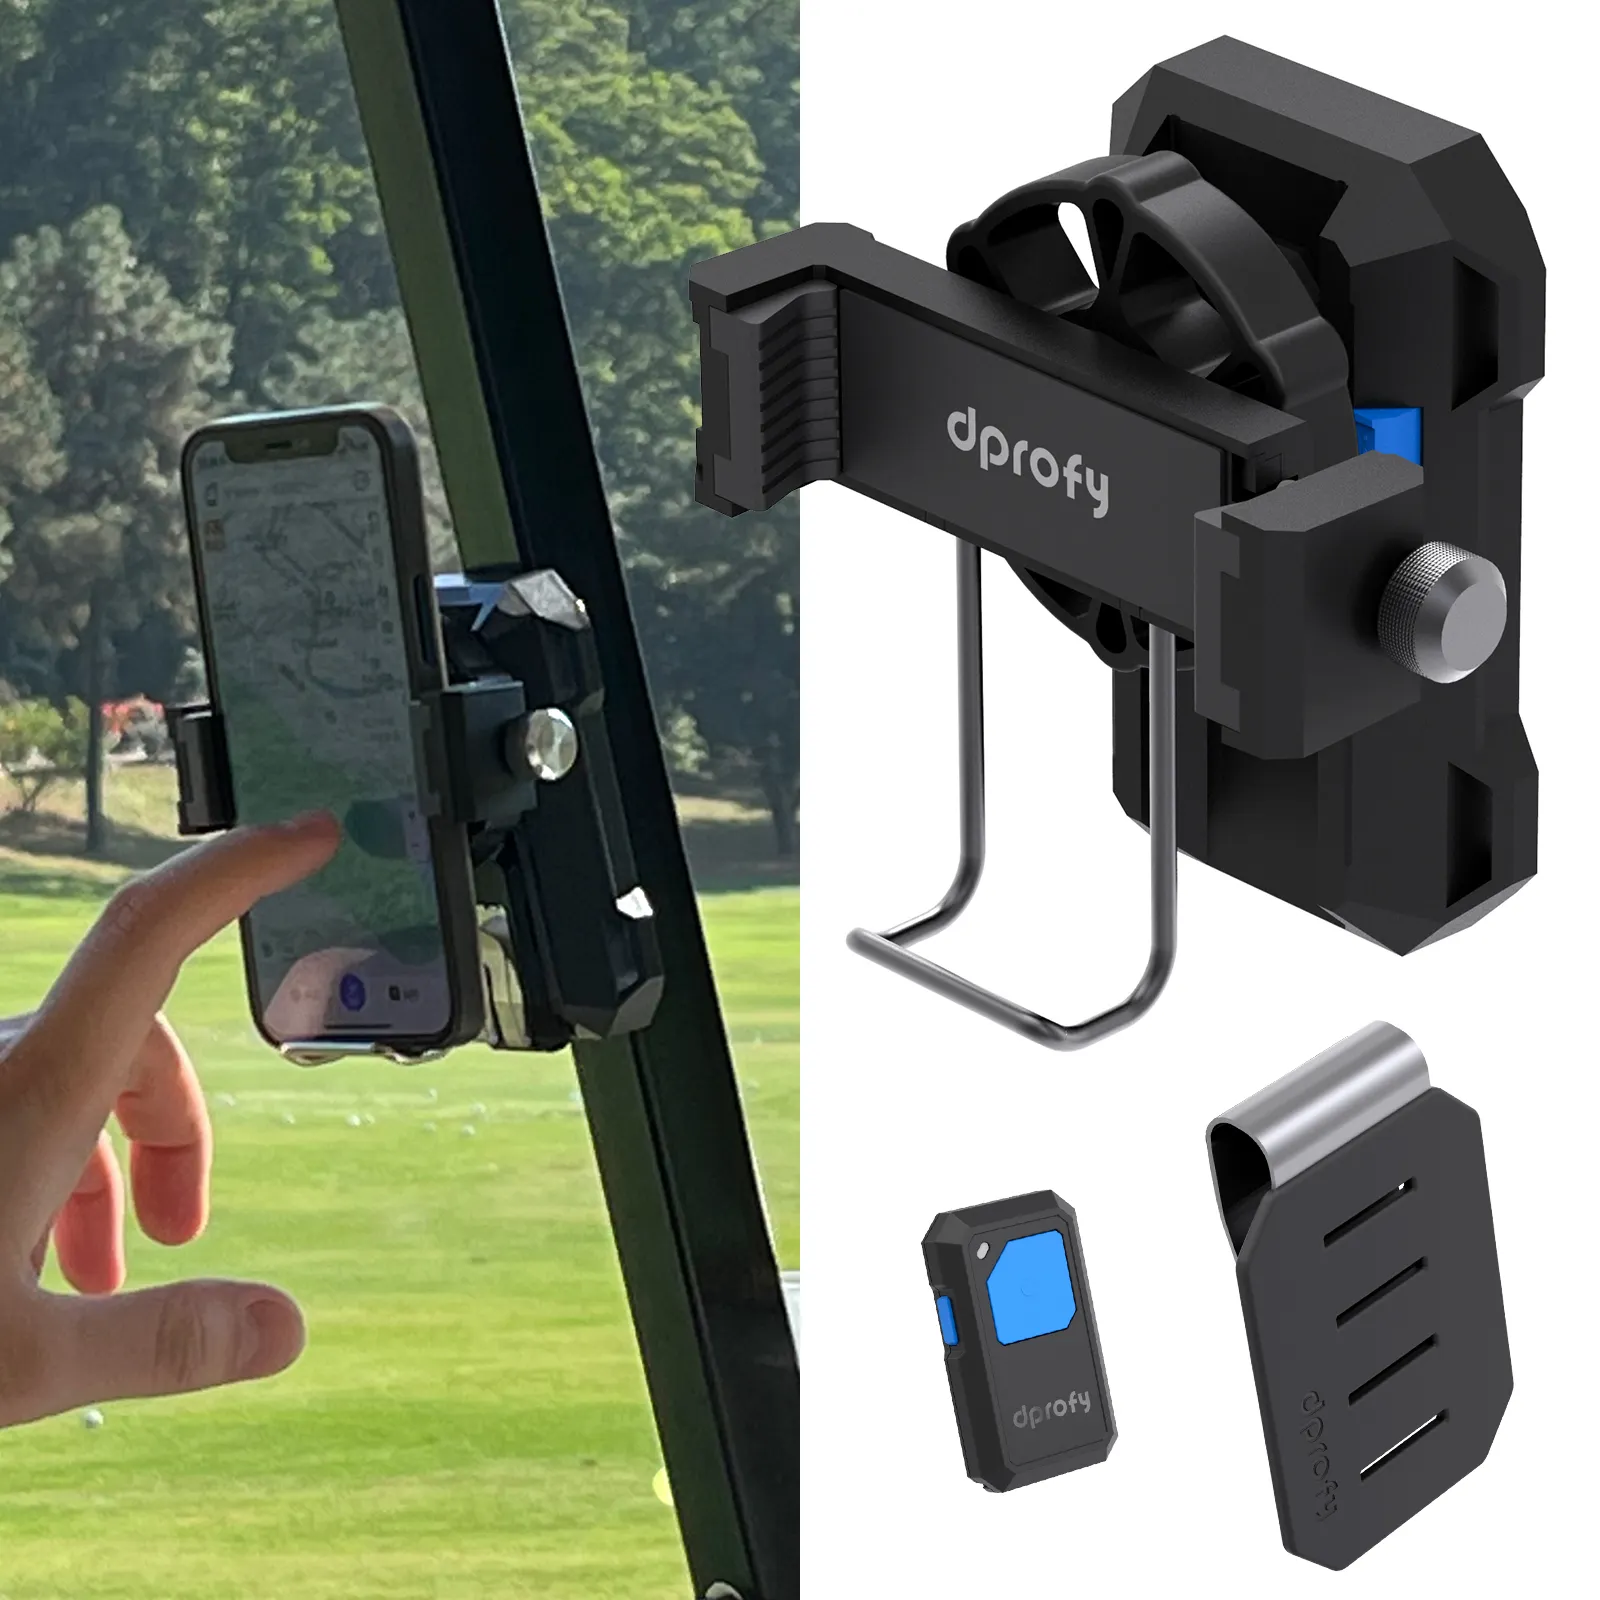 Gsou GM10 Golf cart phone holder golf gifts cart accessories for men